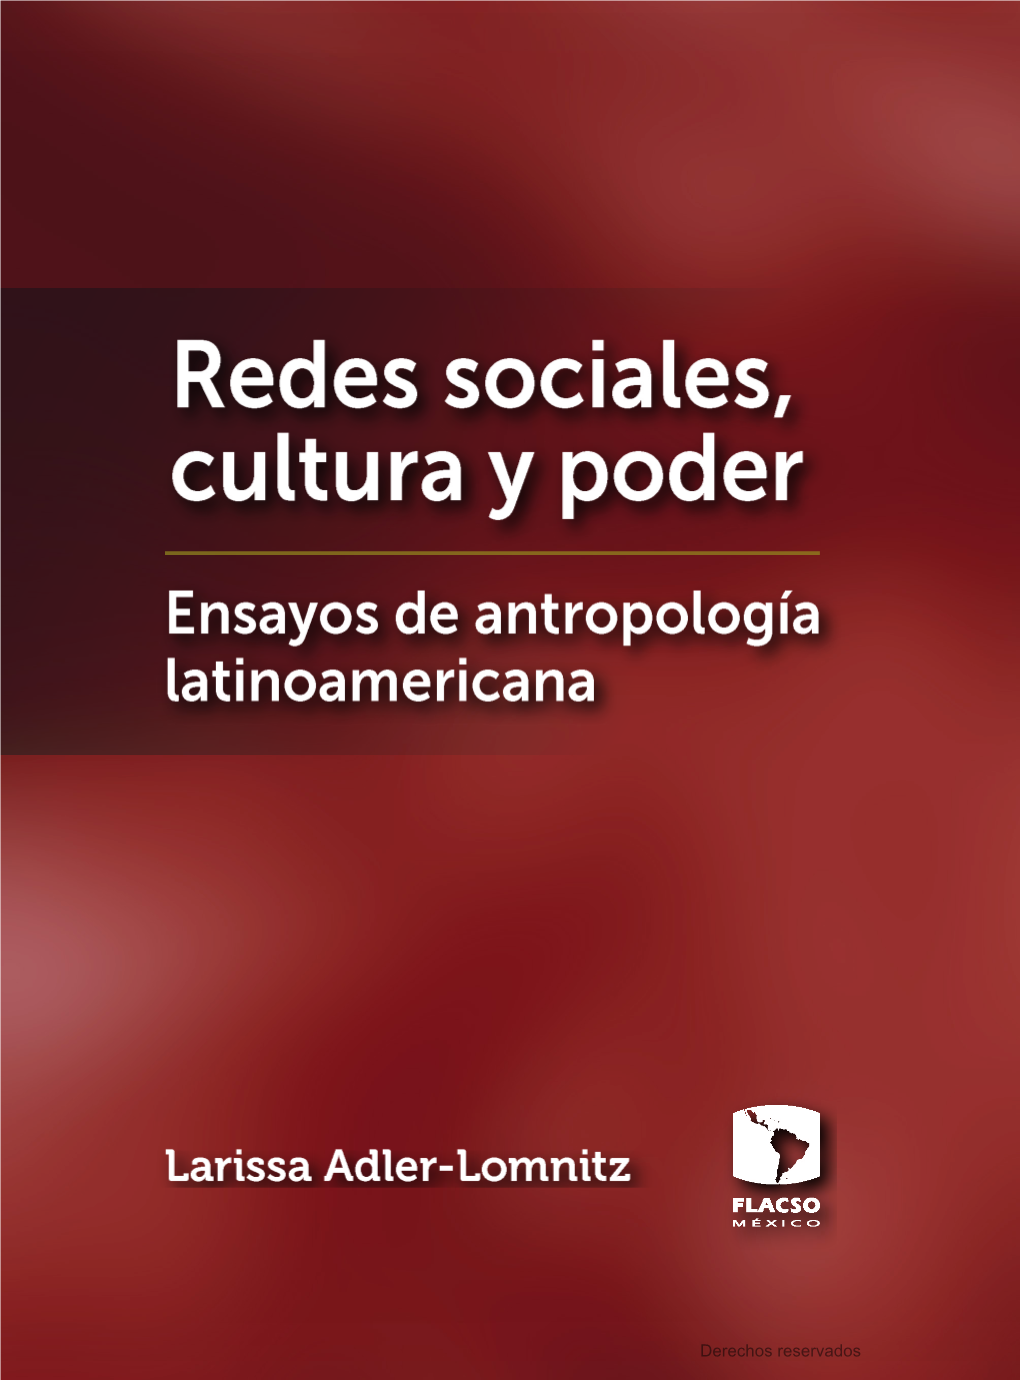 Redes Sociales, Cultura Y Poder. 2012 Larissa Adler-Lomnitz